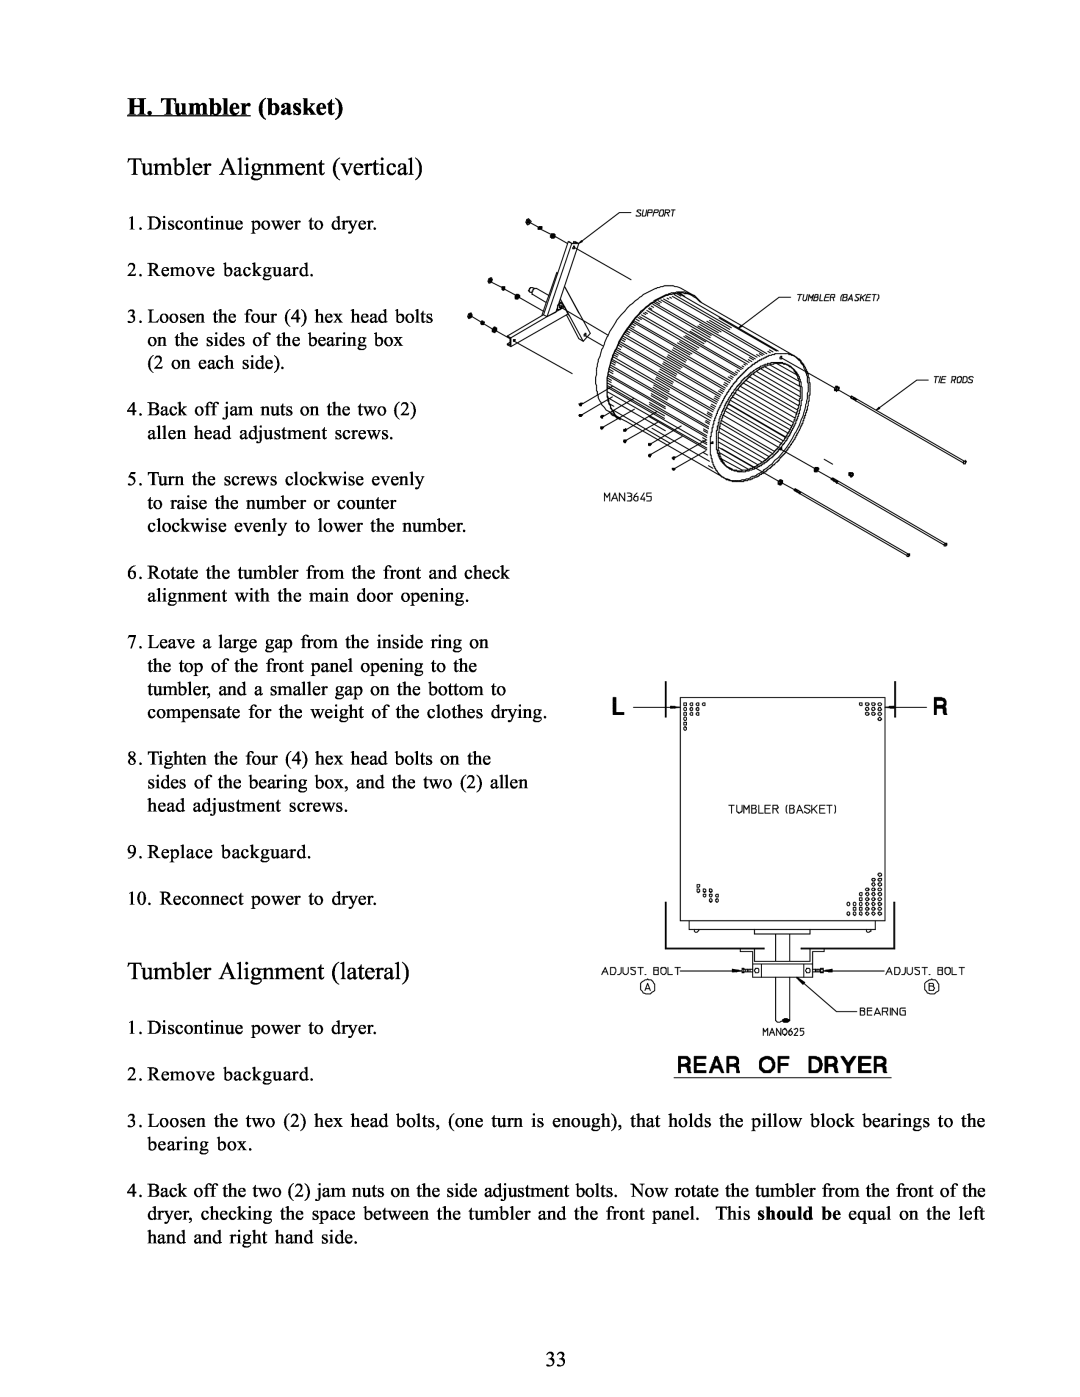 American Dryer Corp WDA-385 service manual H. Tumbler basket Tumbler Alignment vertical, Tumbler Alignment lateral 